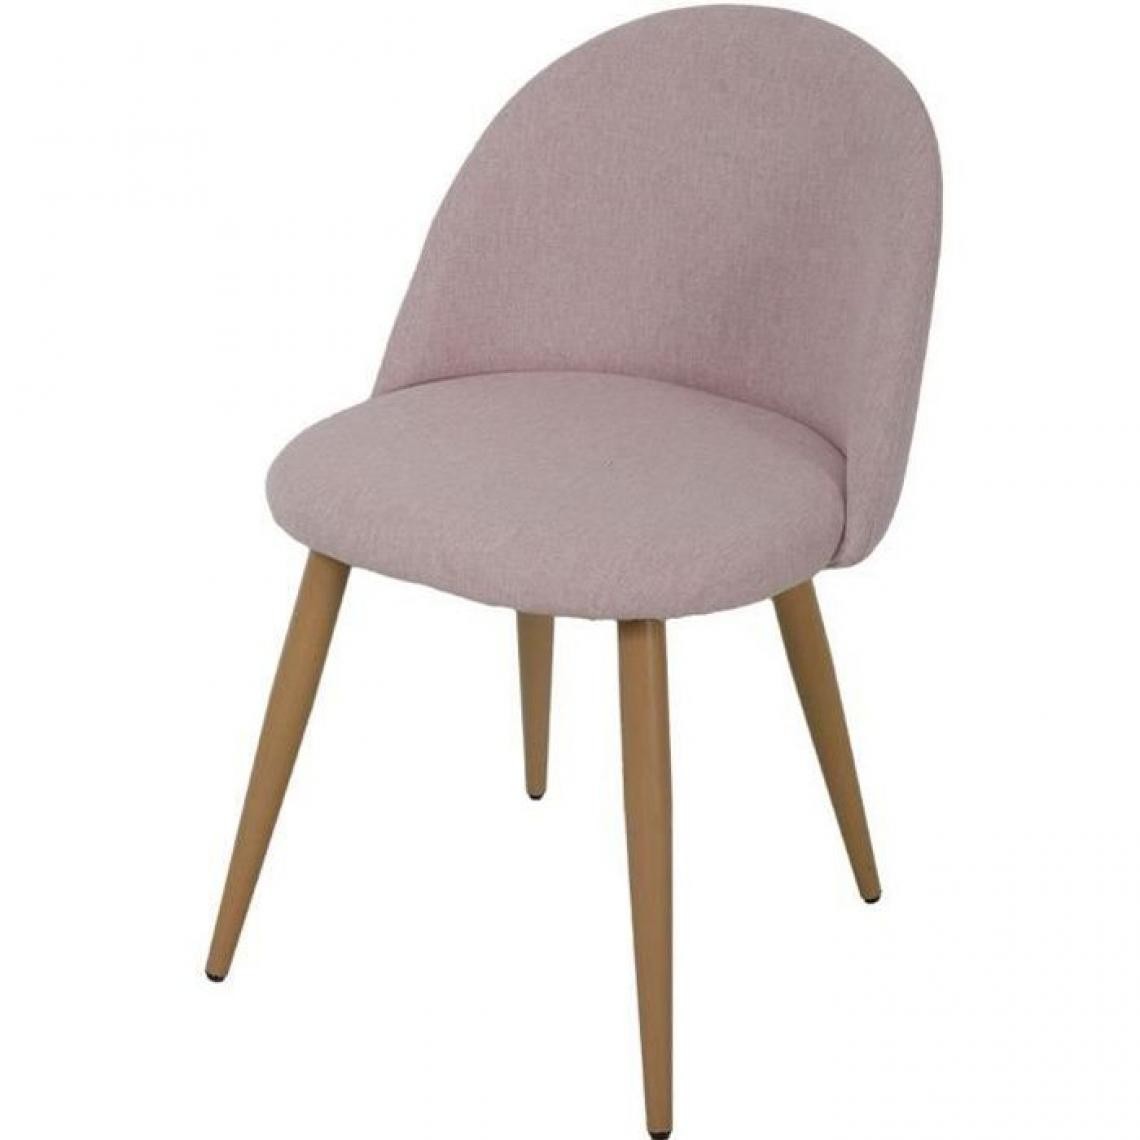 Cstore - Chaise en tissu rose - Pieds en métal - L 53 x P 54 x H 76 cm - COLE - Chaises de jardin